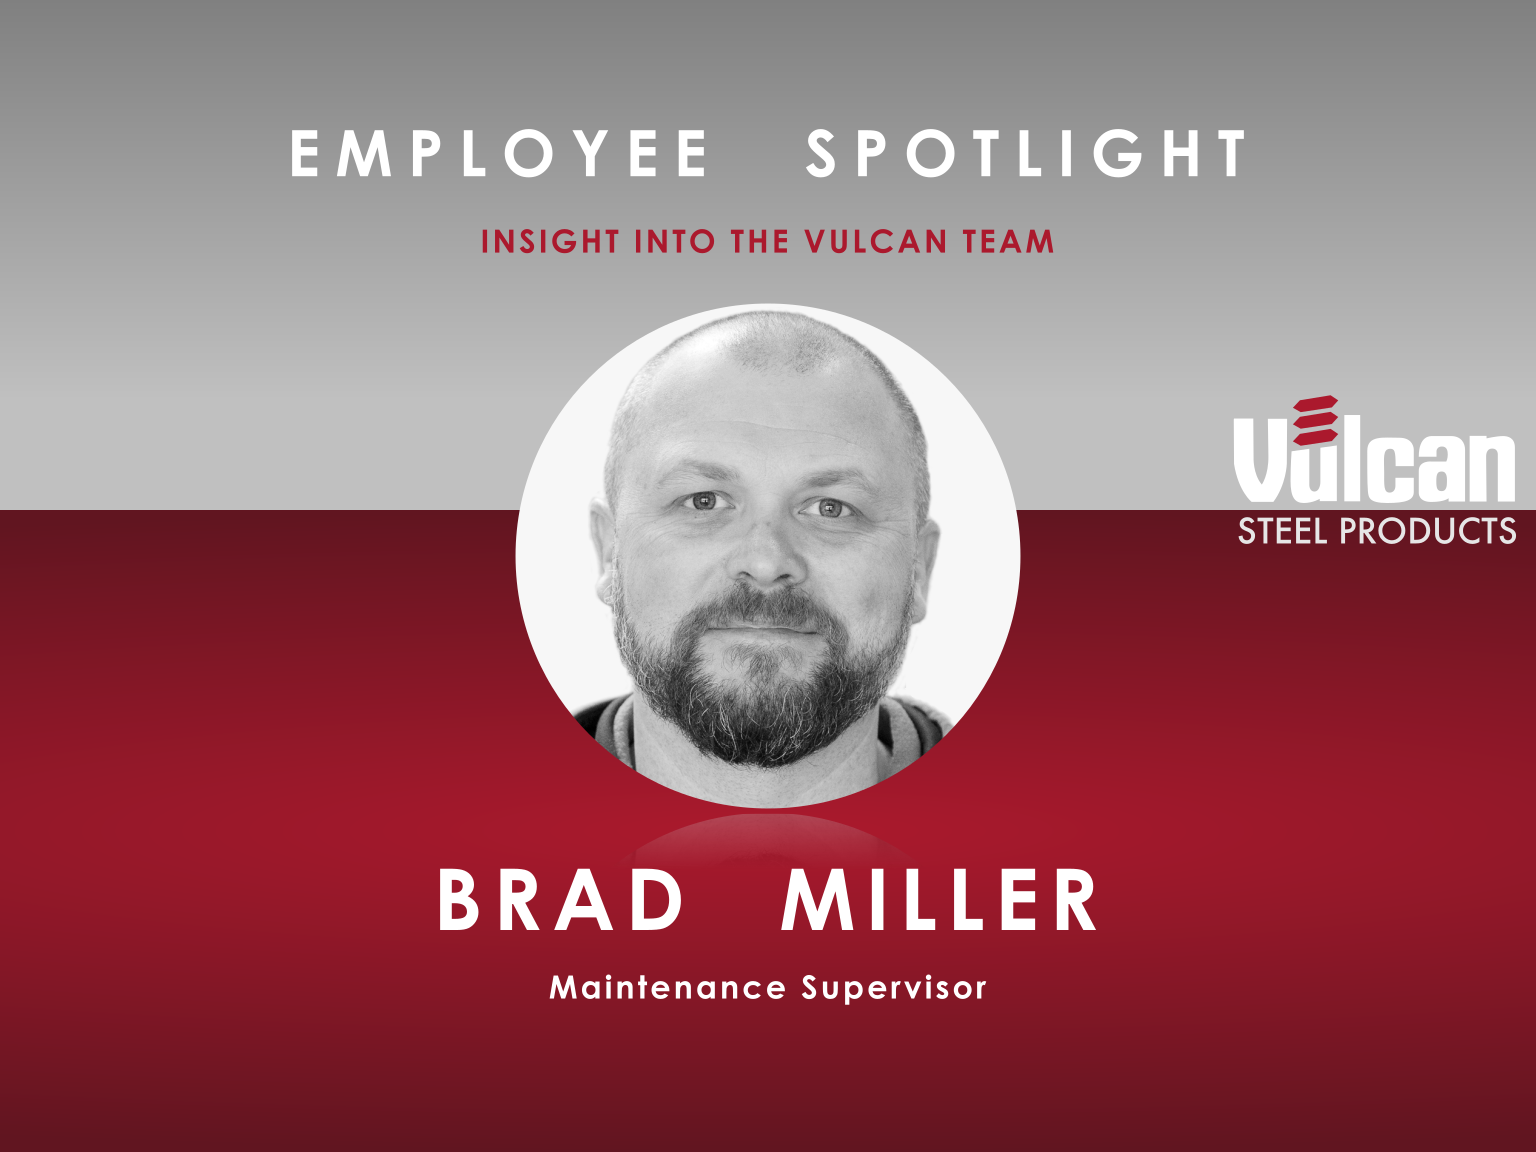 Brad Miller – Maintenance Supervisor